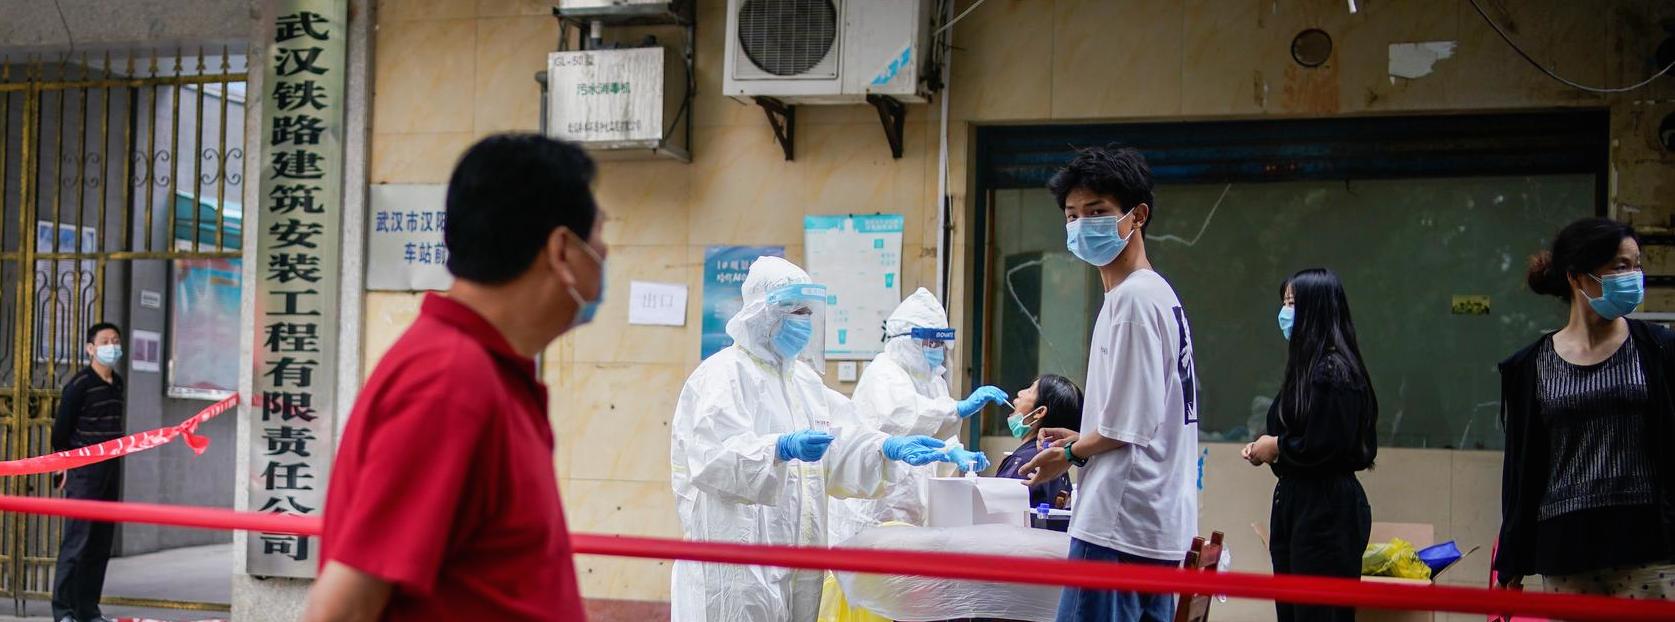 Des soignants chinois opèrent des tests d'amplification de l'acide nucléique à des résidents de Wuhan, capitale provinciale du Hubei et premier foyer officiel de la pandémie de coronavirus, le 15 mai 2020. (Source : Reuters)